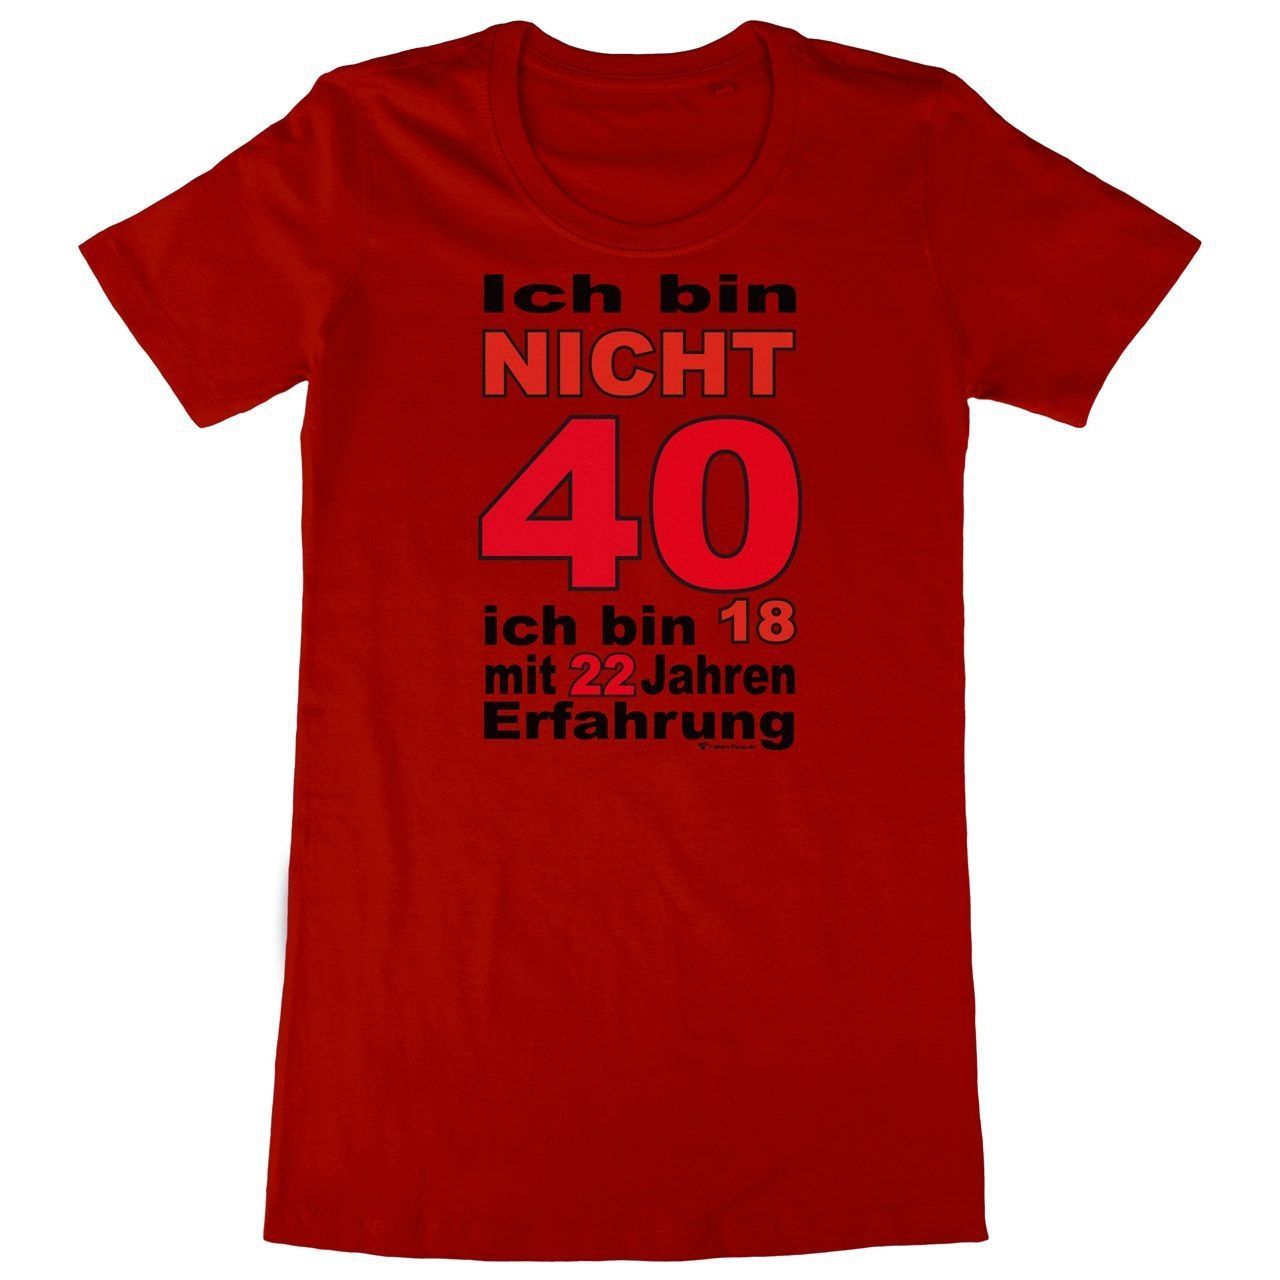 Bin nicht 40 Woman Long Shirt rot Large